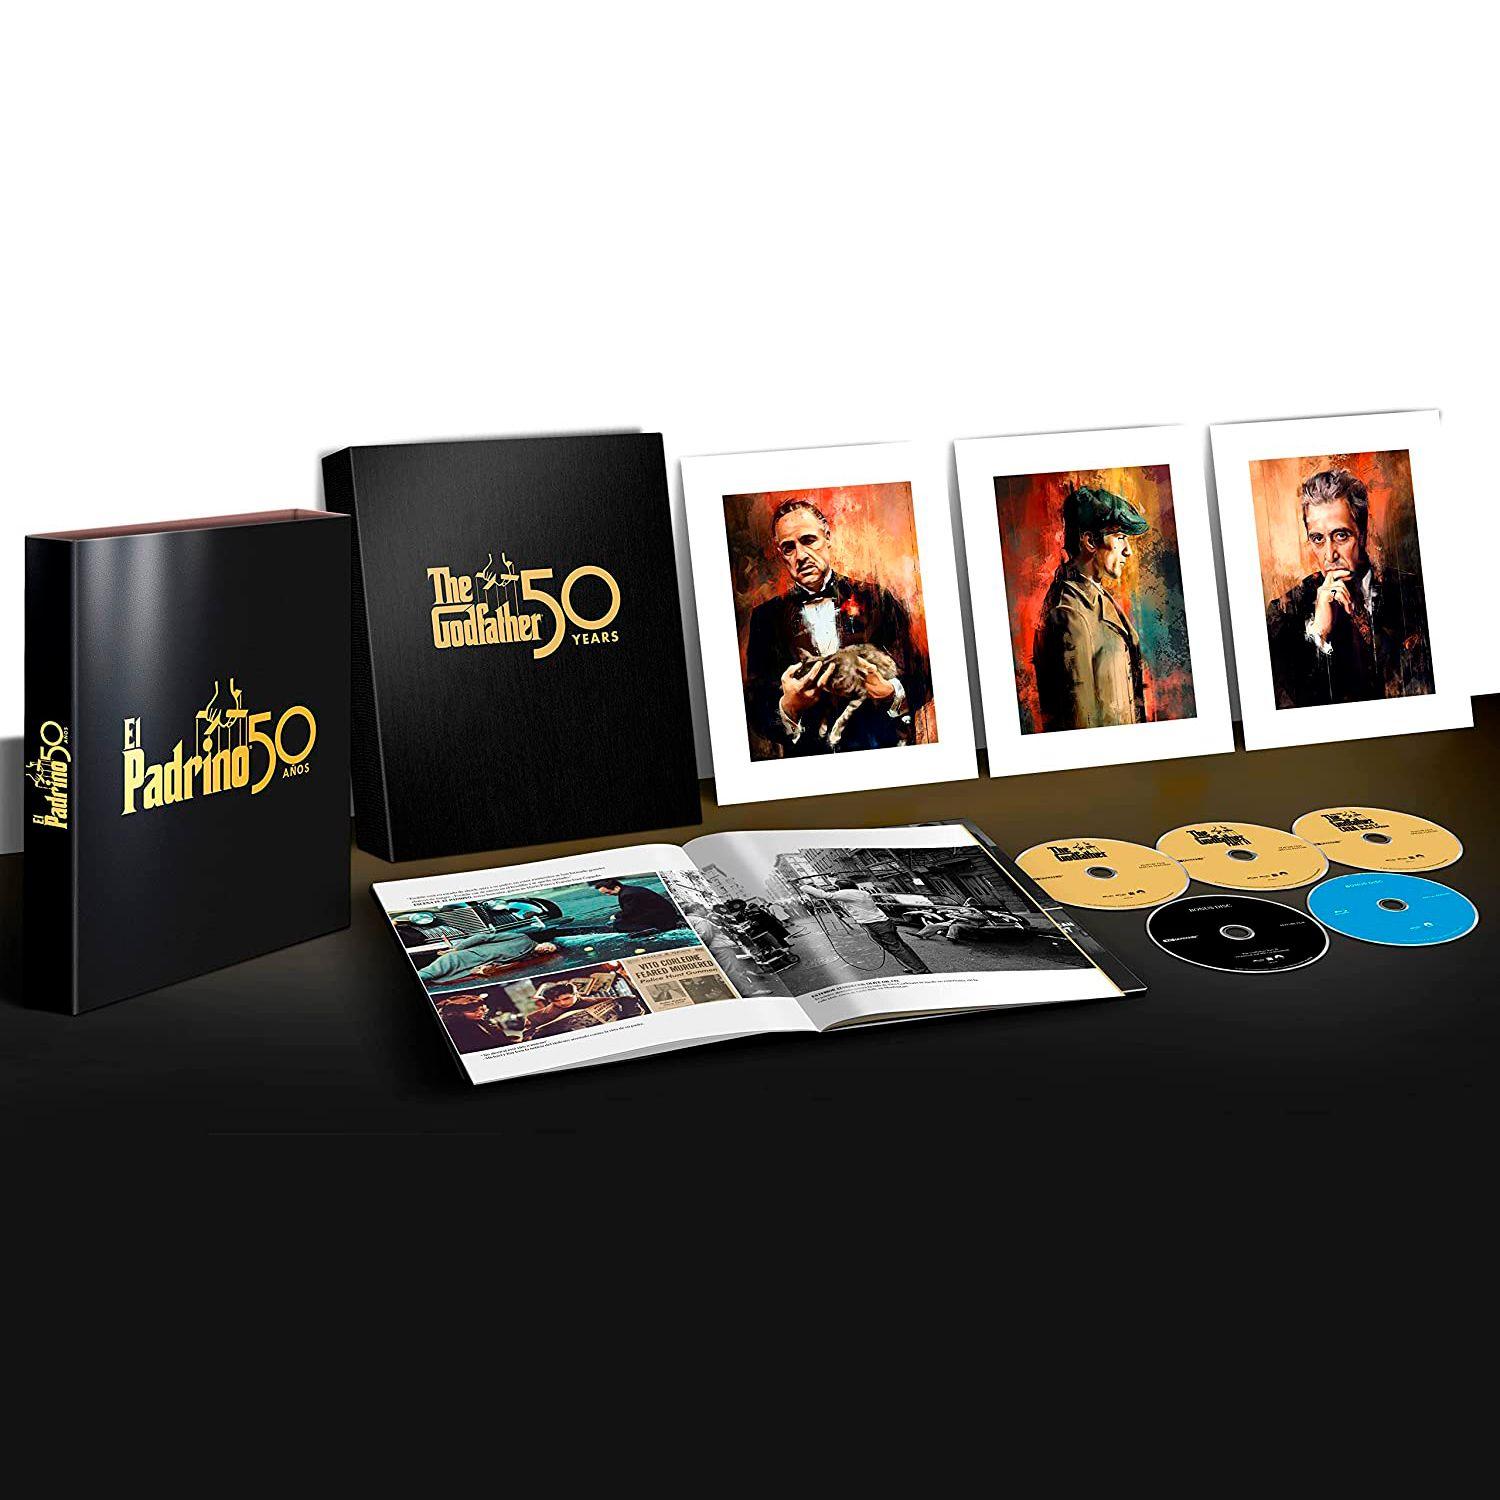 Крестный отец: Трилогия (4K UHD + Blu-ray) Коллекционное издание